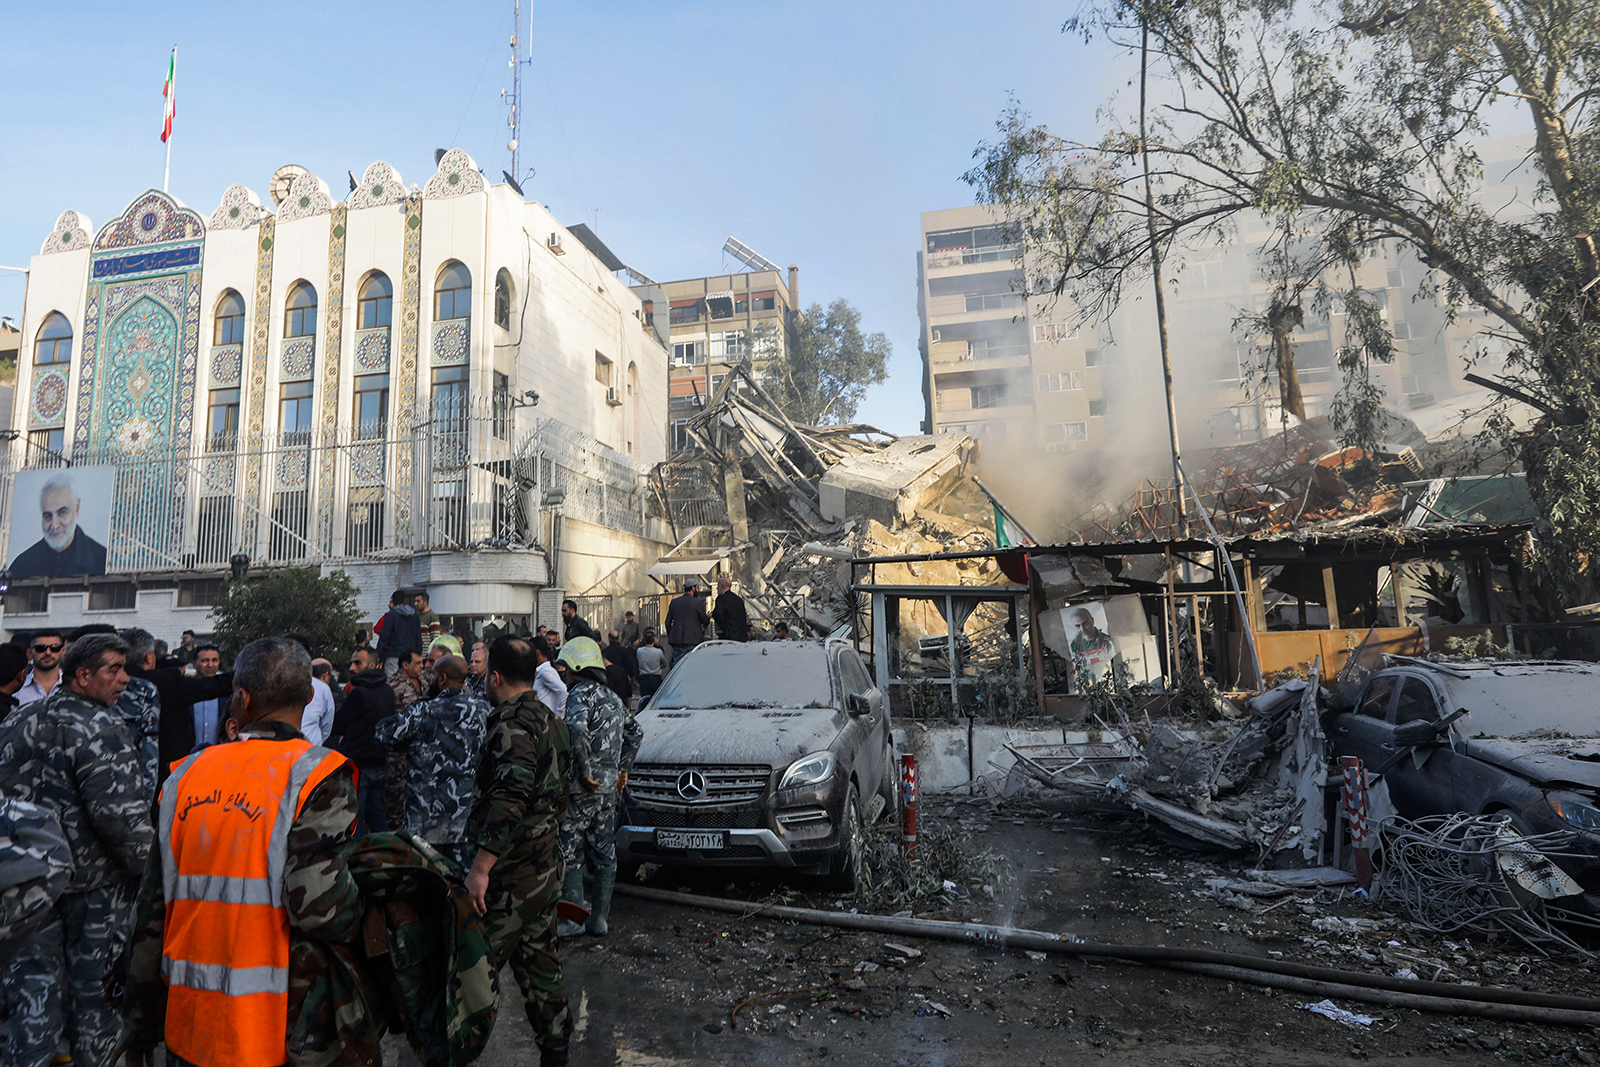 4 月 1 日，叙利亚首都大马士革的伊朗大使馆旁边的一栋建筑遭到袭击，紧急情况和安全人员正在检查袭击地点。